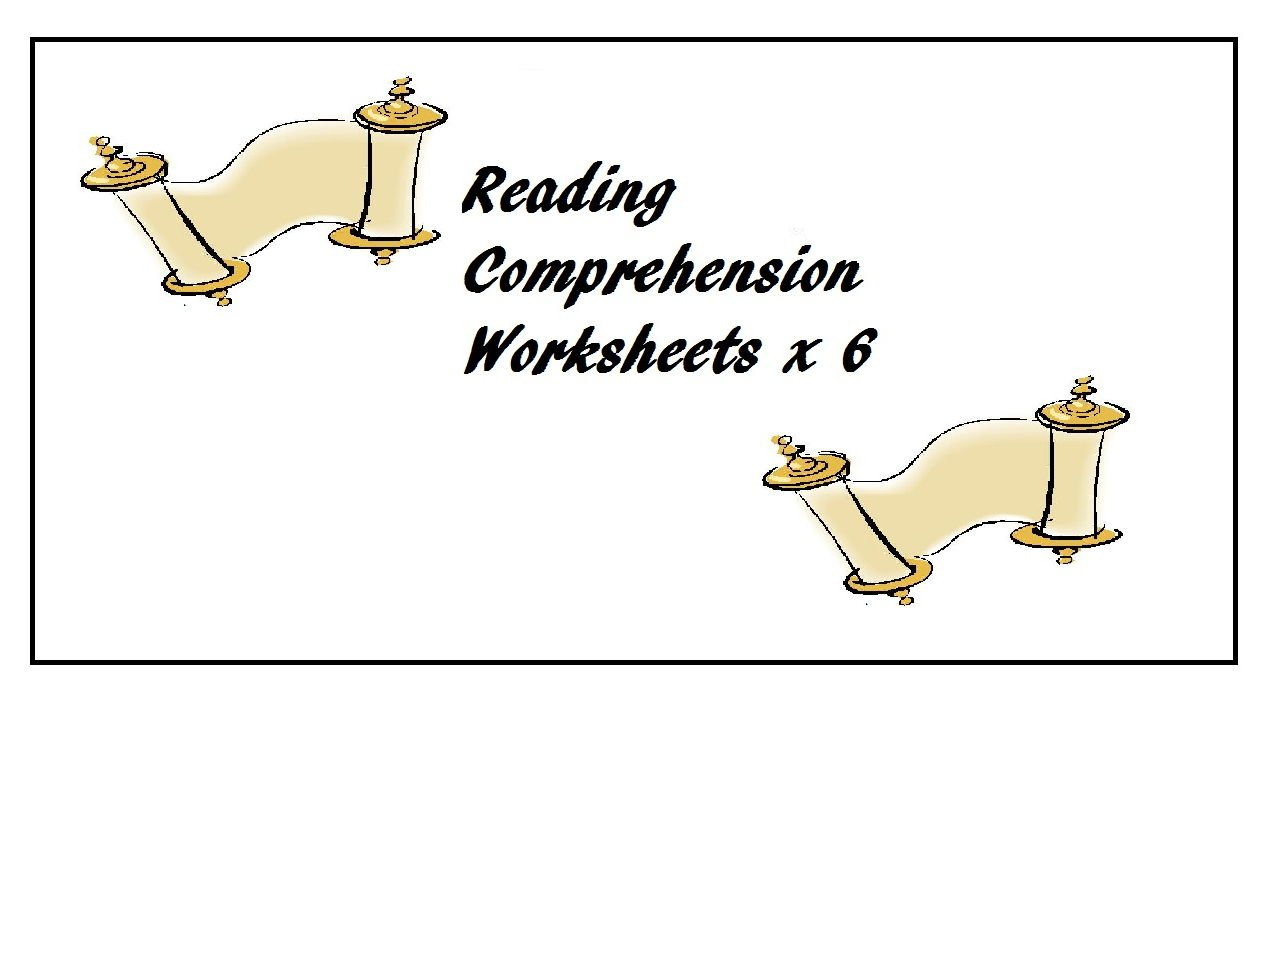 Reading Comprehension Worksheets X 6 60  Off  Esl Elt Ell For Reading Comprehension Worksheets For Advanced Esl Students